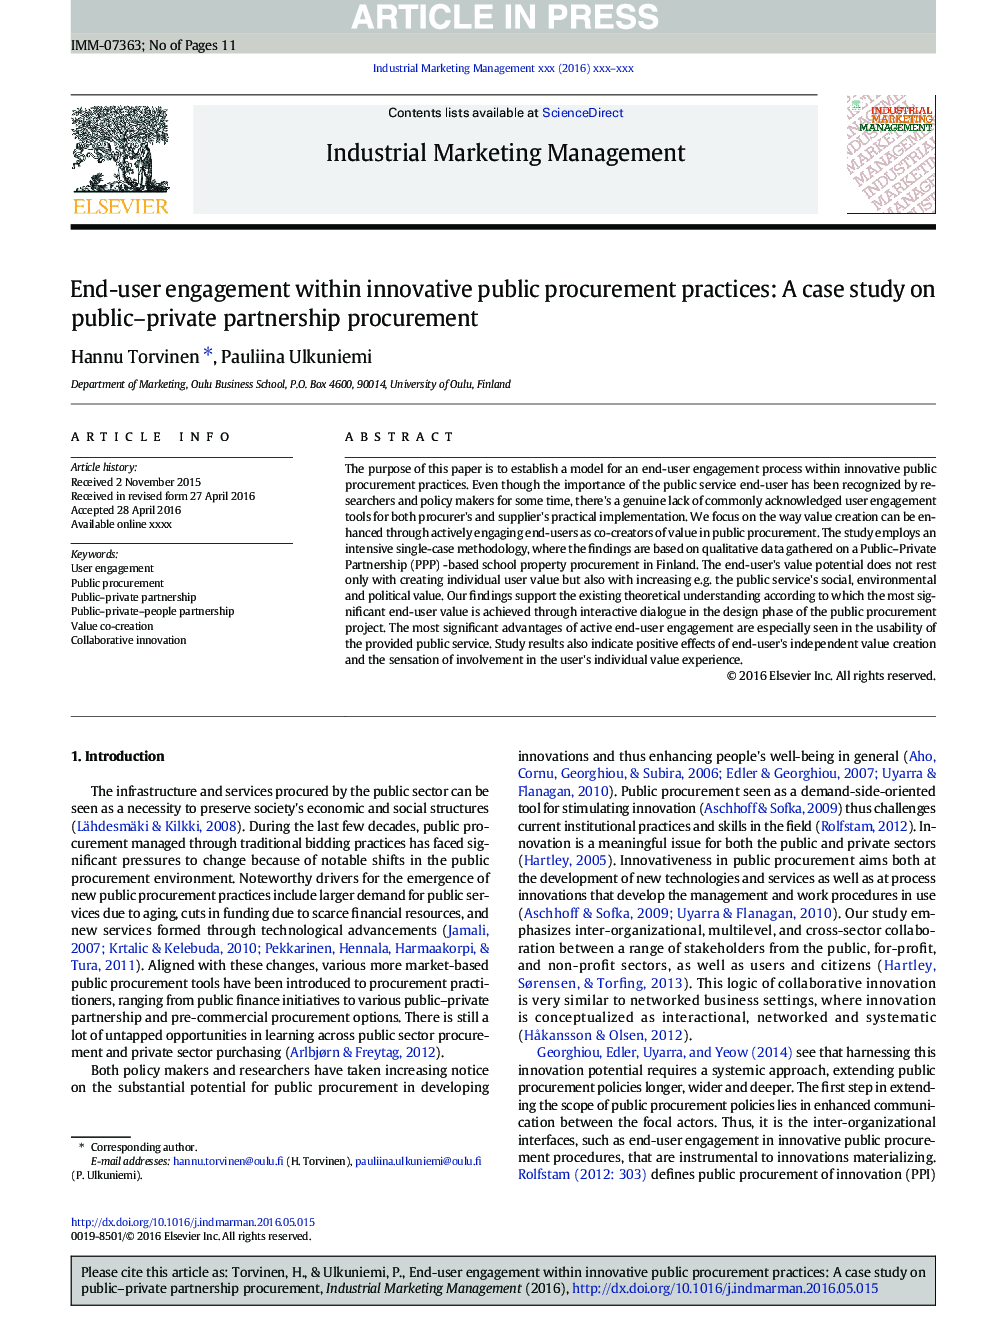 End-user engagement within innovative public procurement practices: A case study on public-private partnership procurement